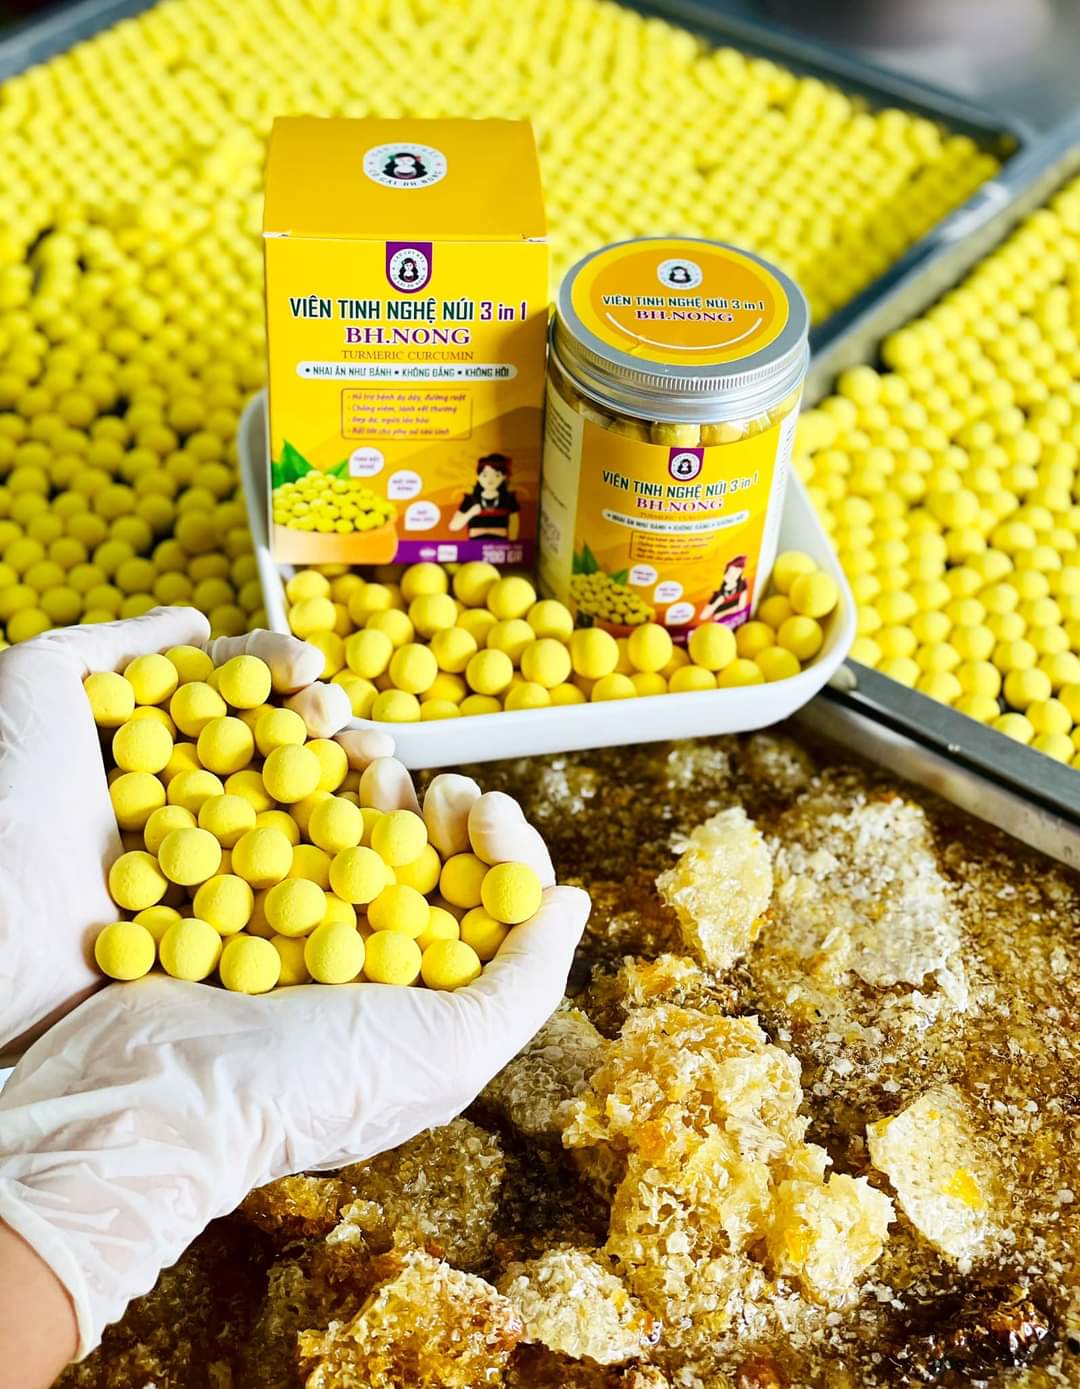 viên tinh bột nghệ tẩm mật ong rừng cô gái bhnong , hộp 200g gần 200 viên